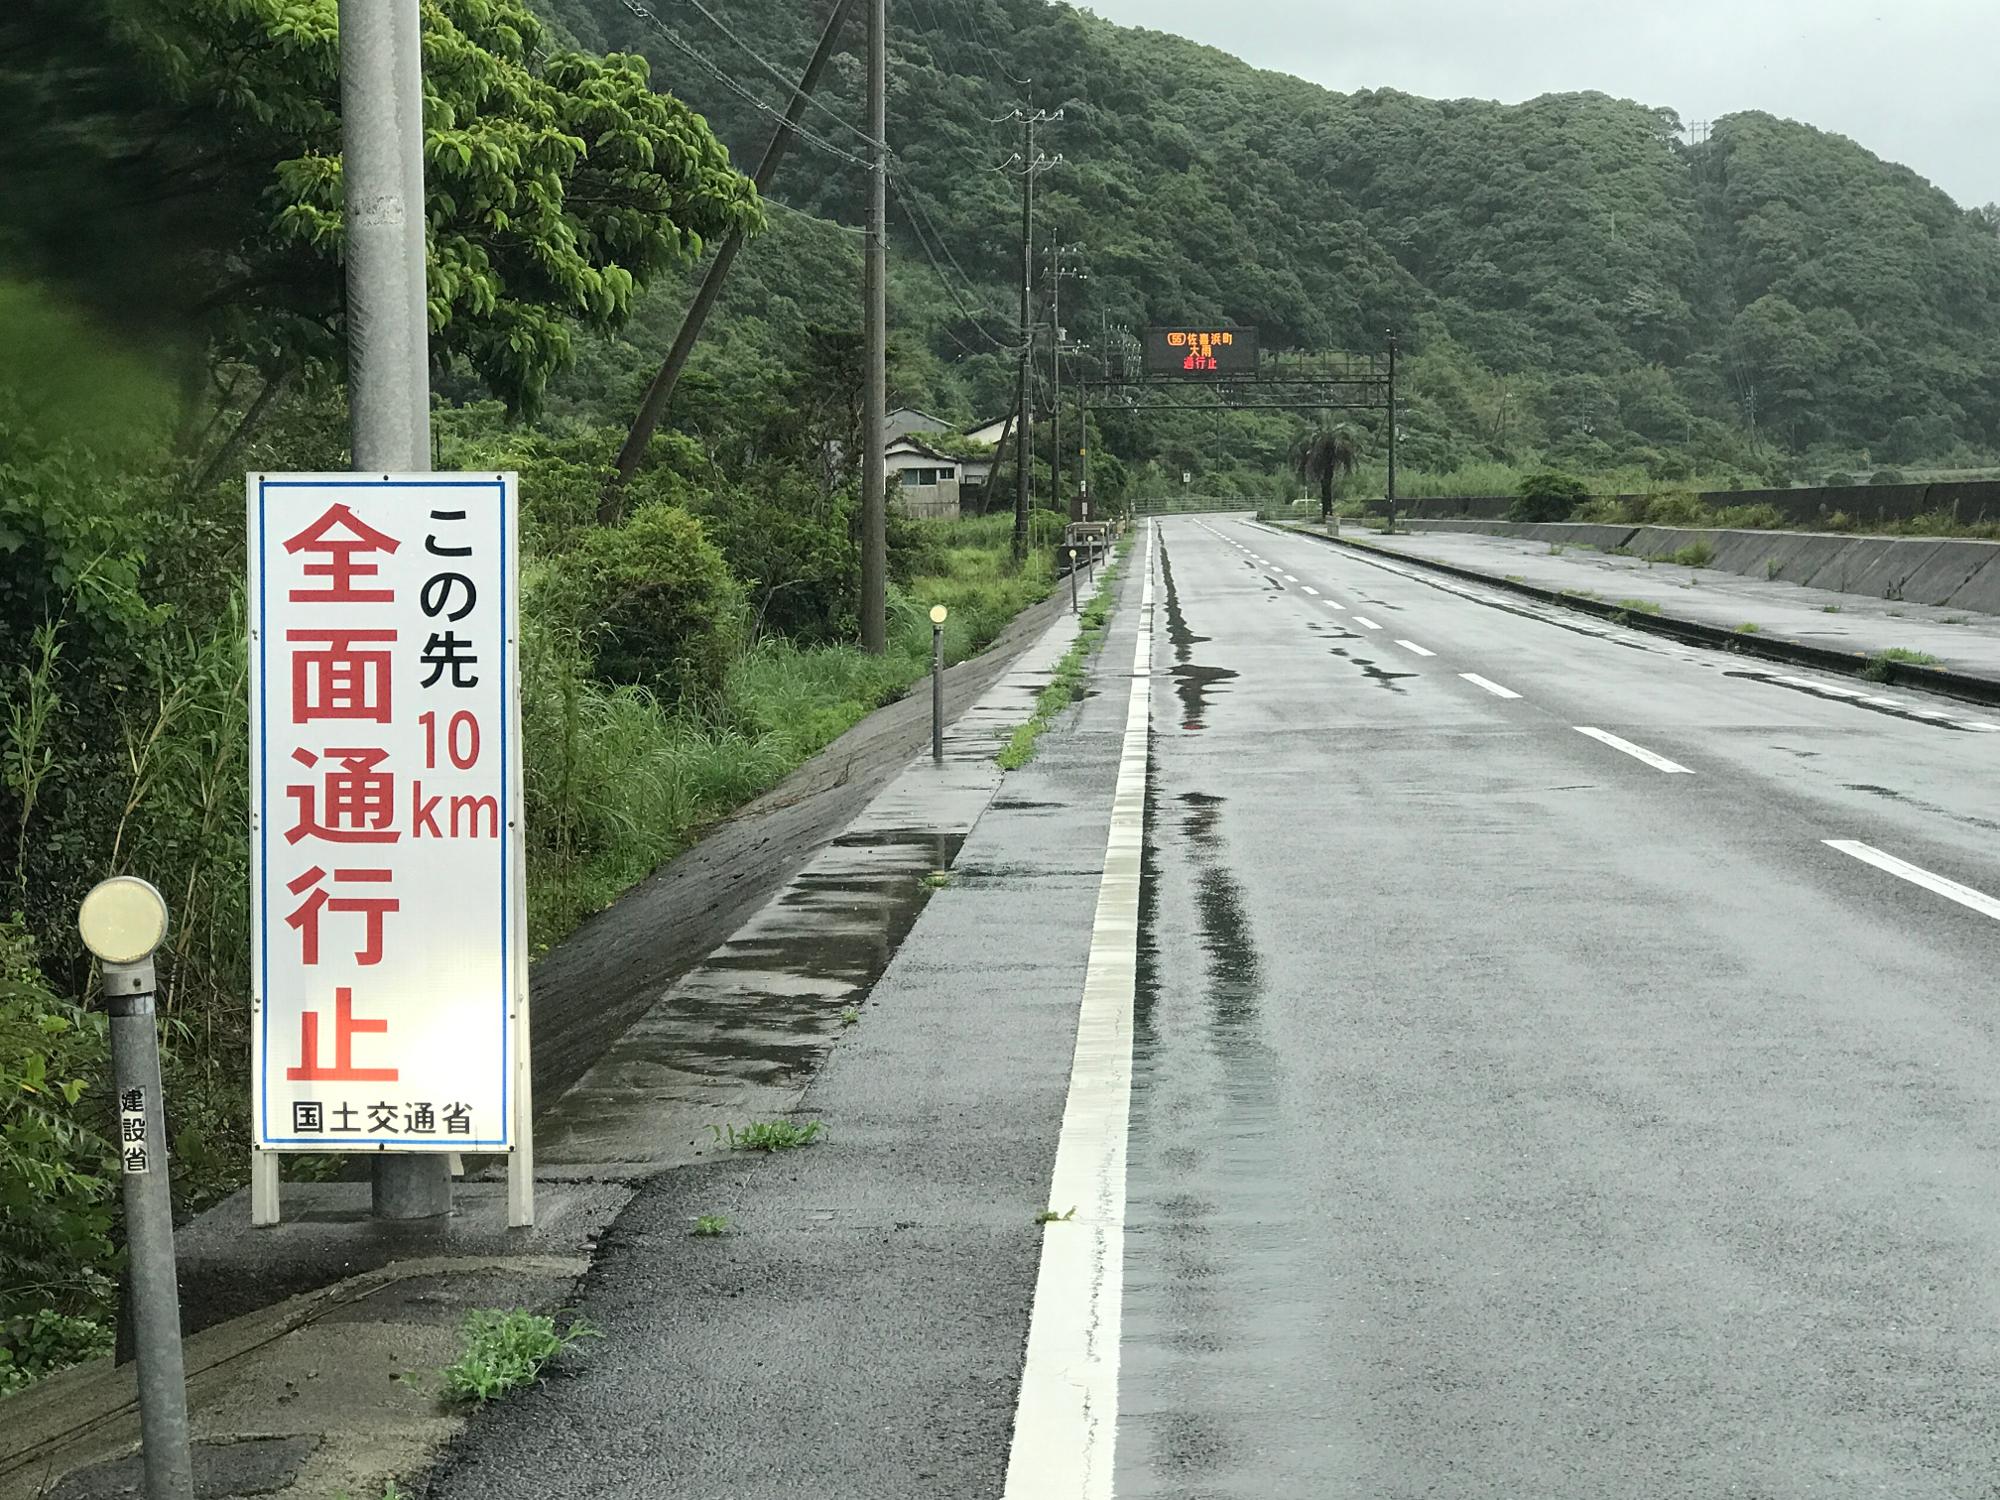 佐喜浜までは行けますが、東洋町に行く道路が通行止め